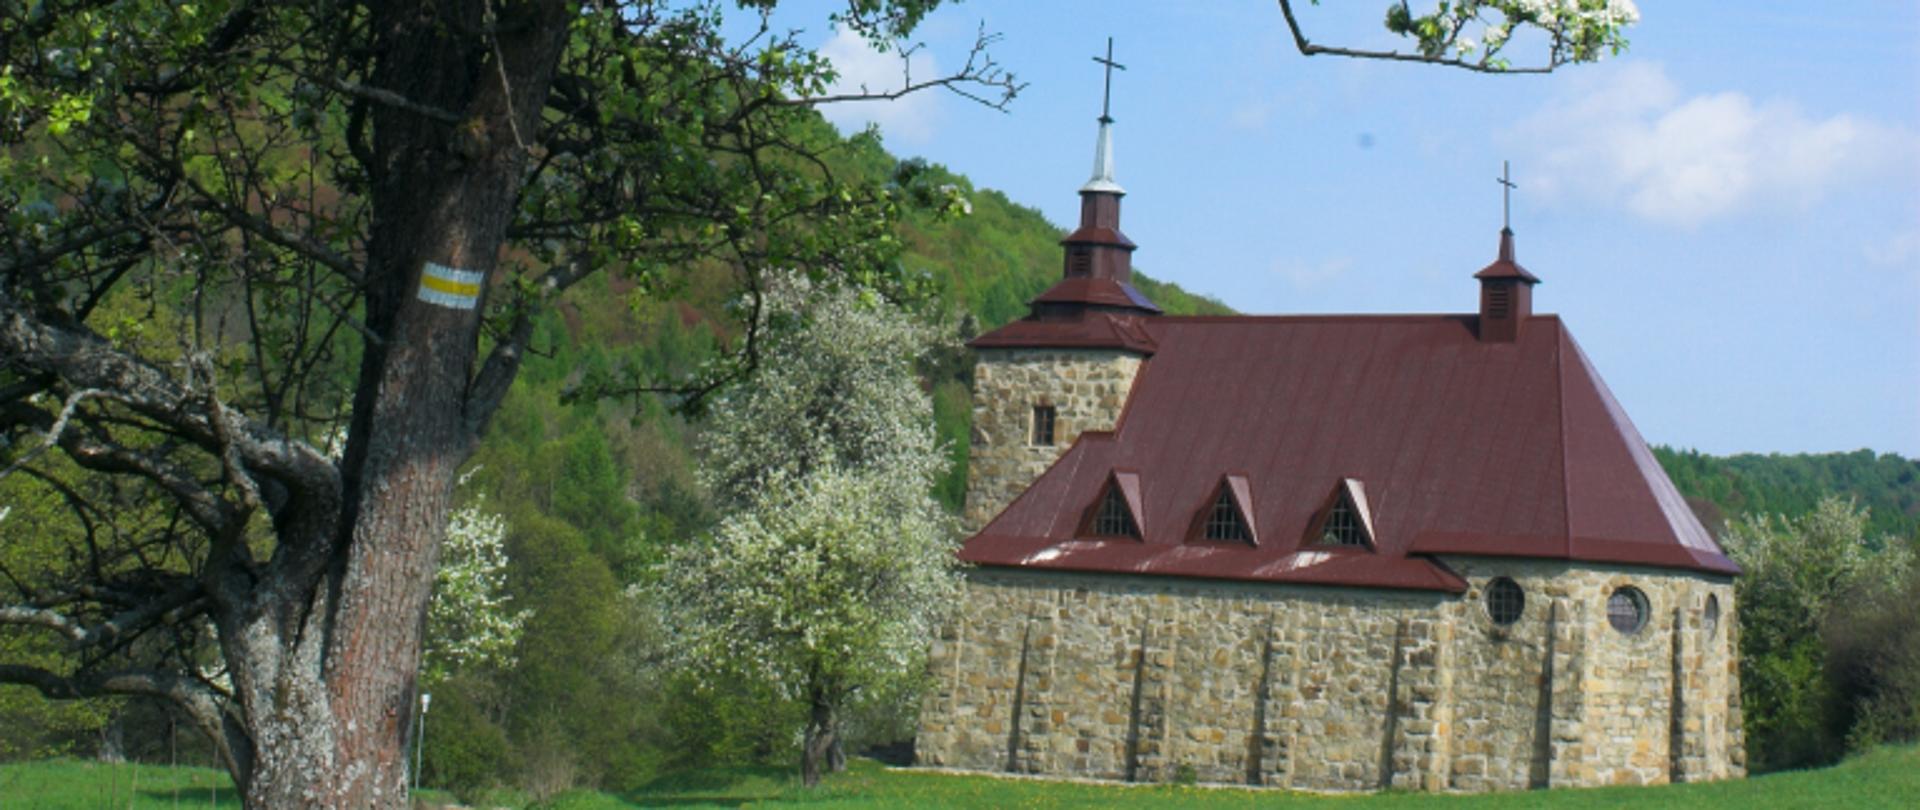 kościół w Hucie Polańskiej